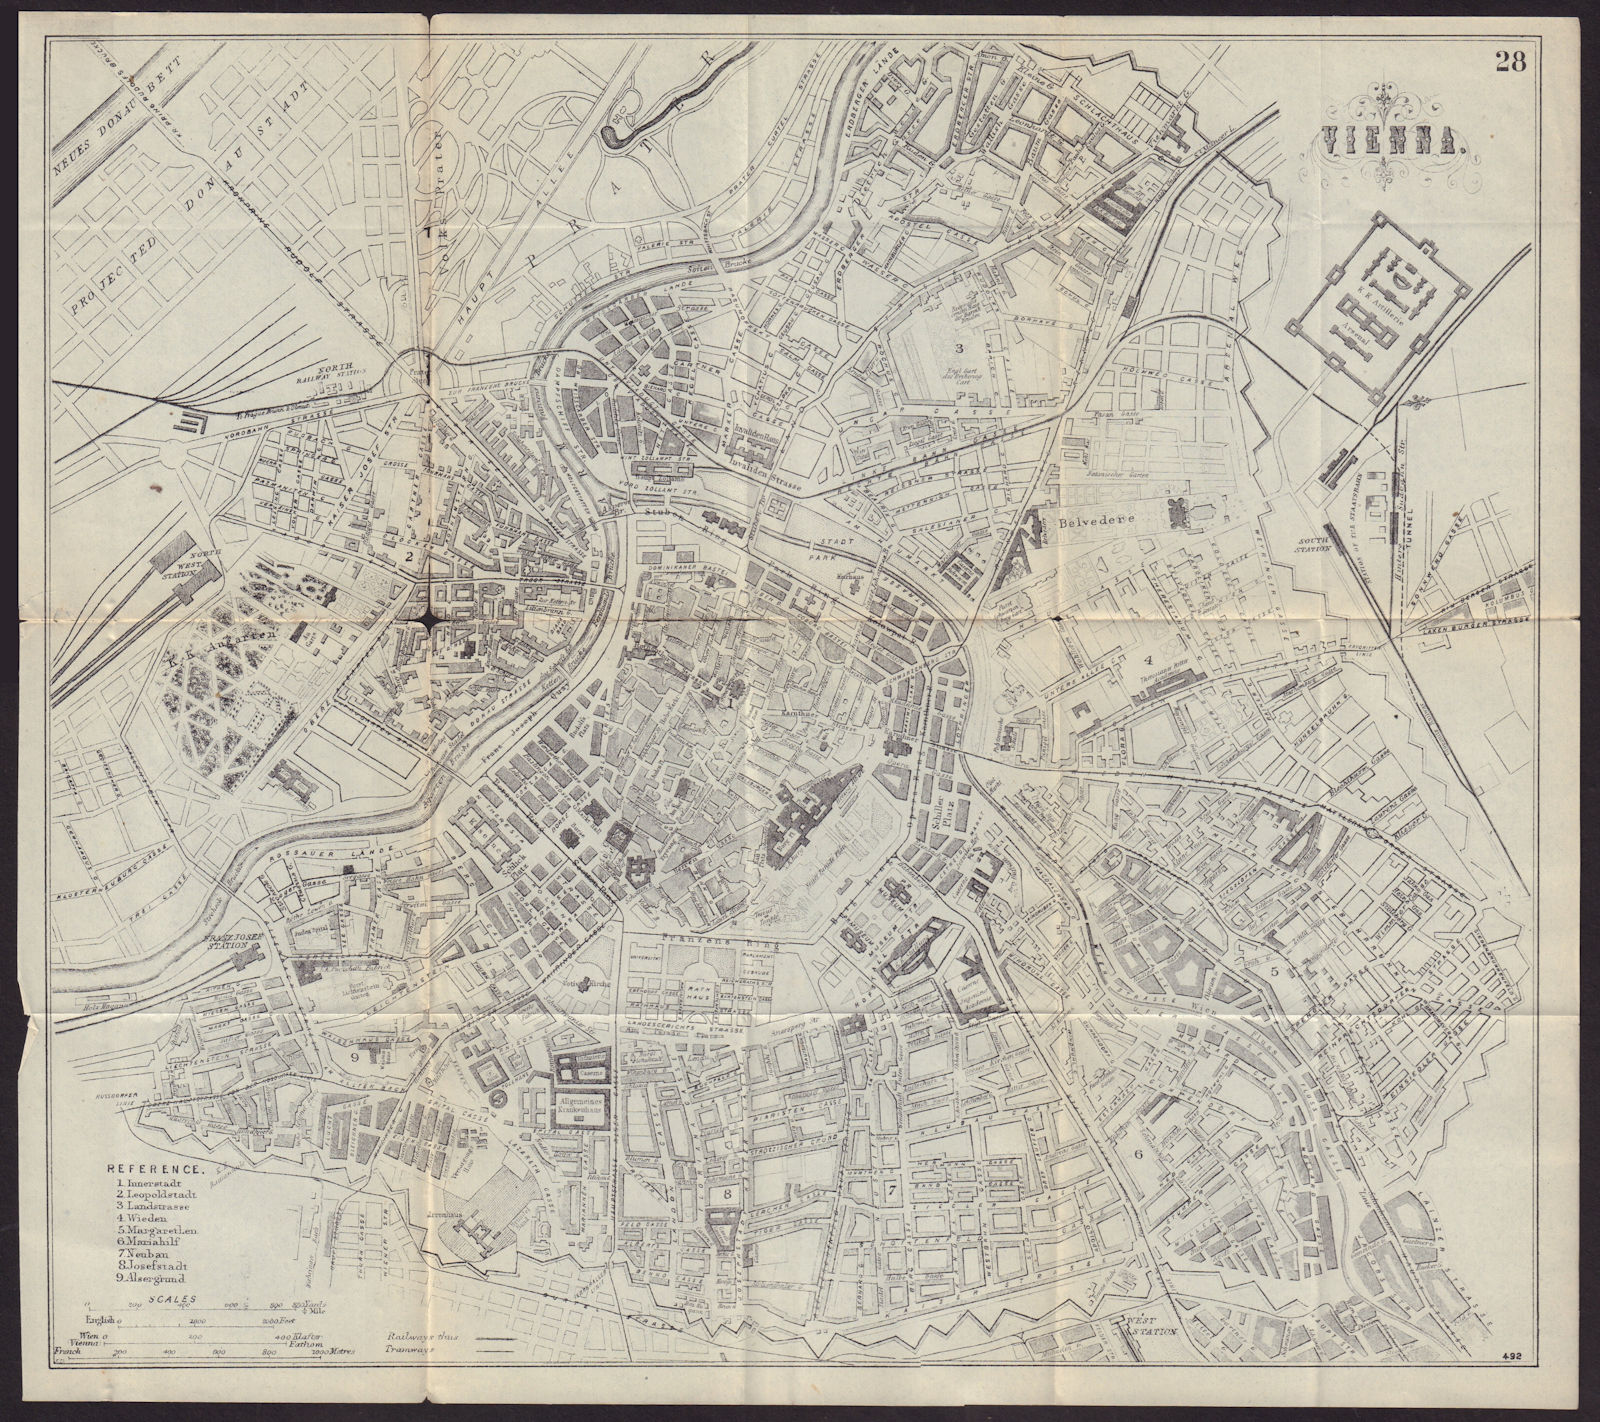 VIENNA WIEN antique town plan city map. Austria. BRADSHAW 1892 old